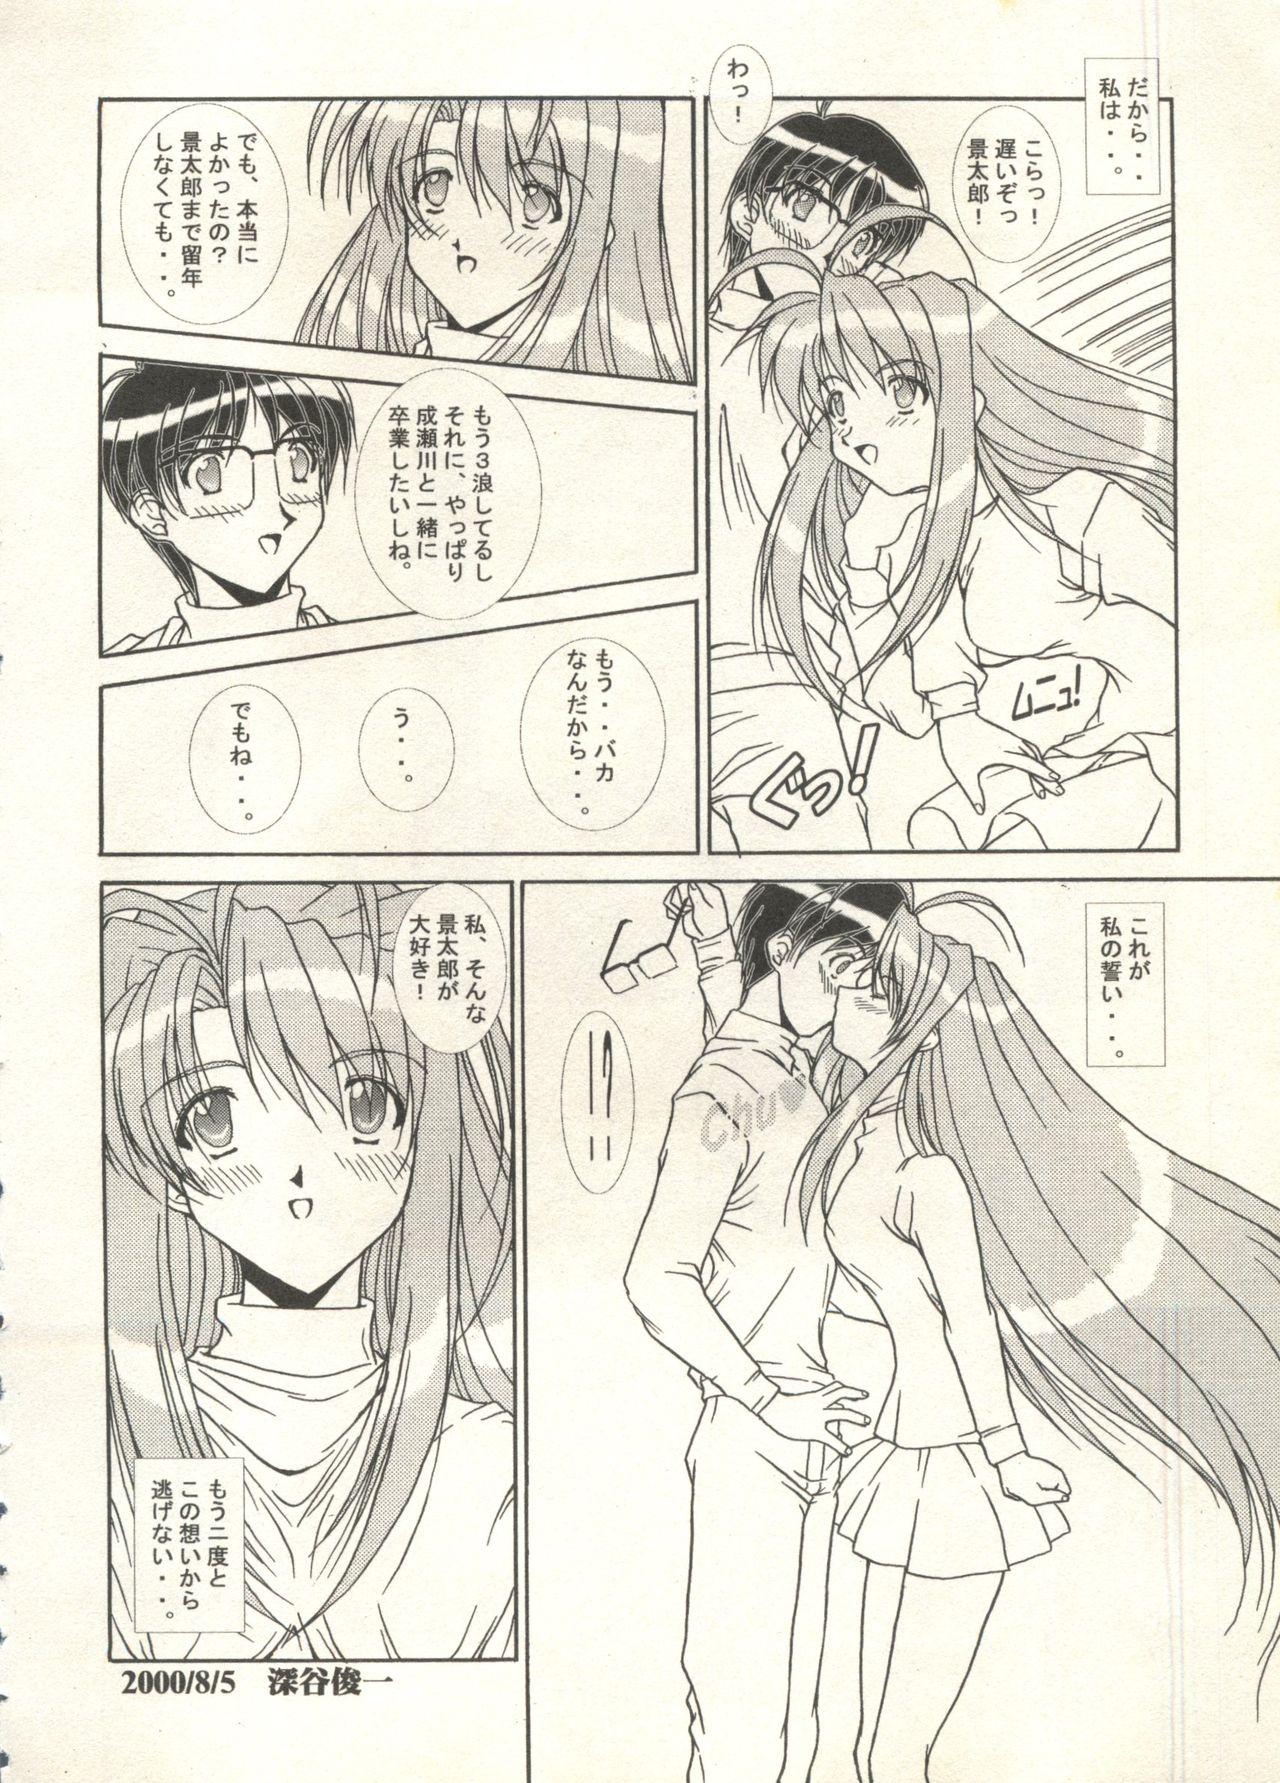 Bishoujo Shoukougun 2000 Manga-Anime Hen 2 113